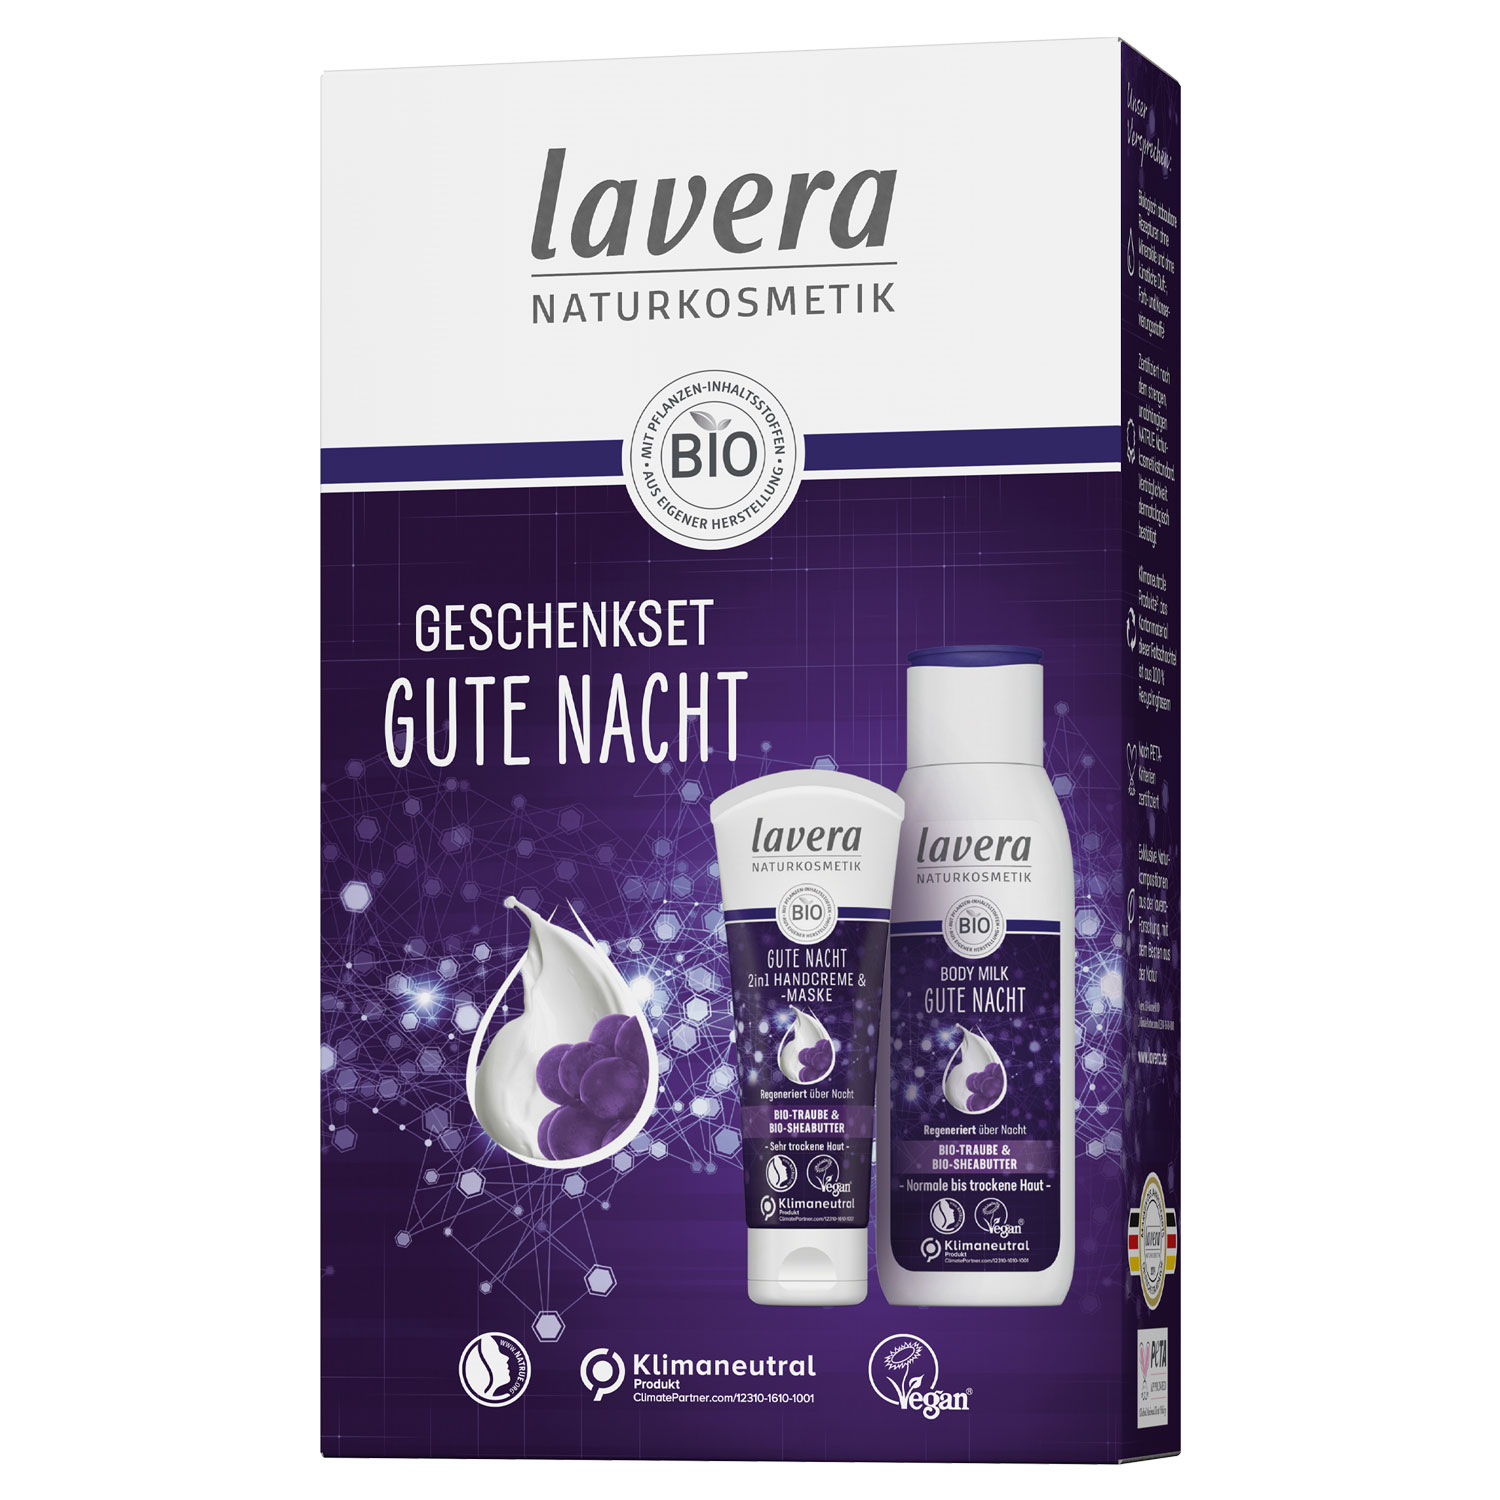 Lavera - Geschenkset Gute Nacht, Bio-Traube mit Bodylotion GmbH - & Bio-Sheabutter, Handcreme Agropha und